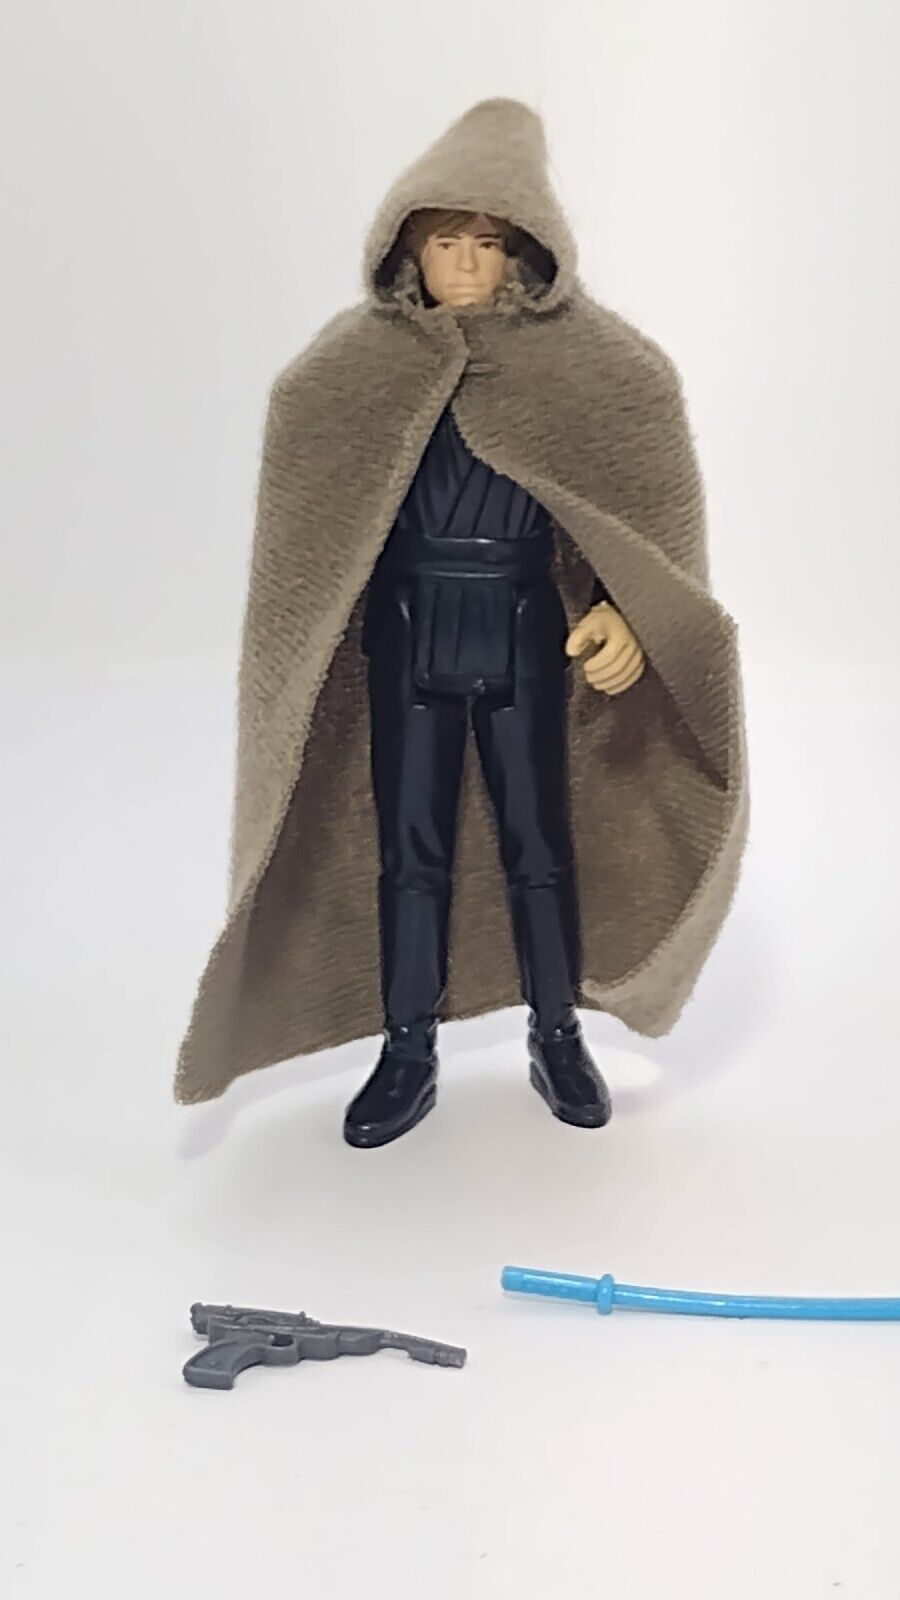 Luke Skywalker (Jedi Knight Outfit) sold